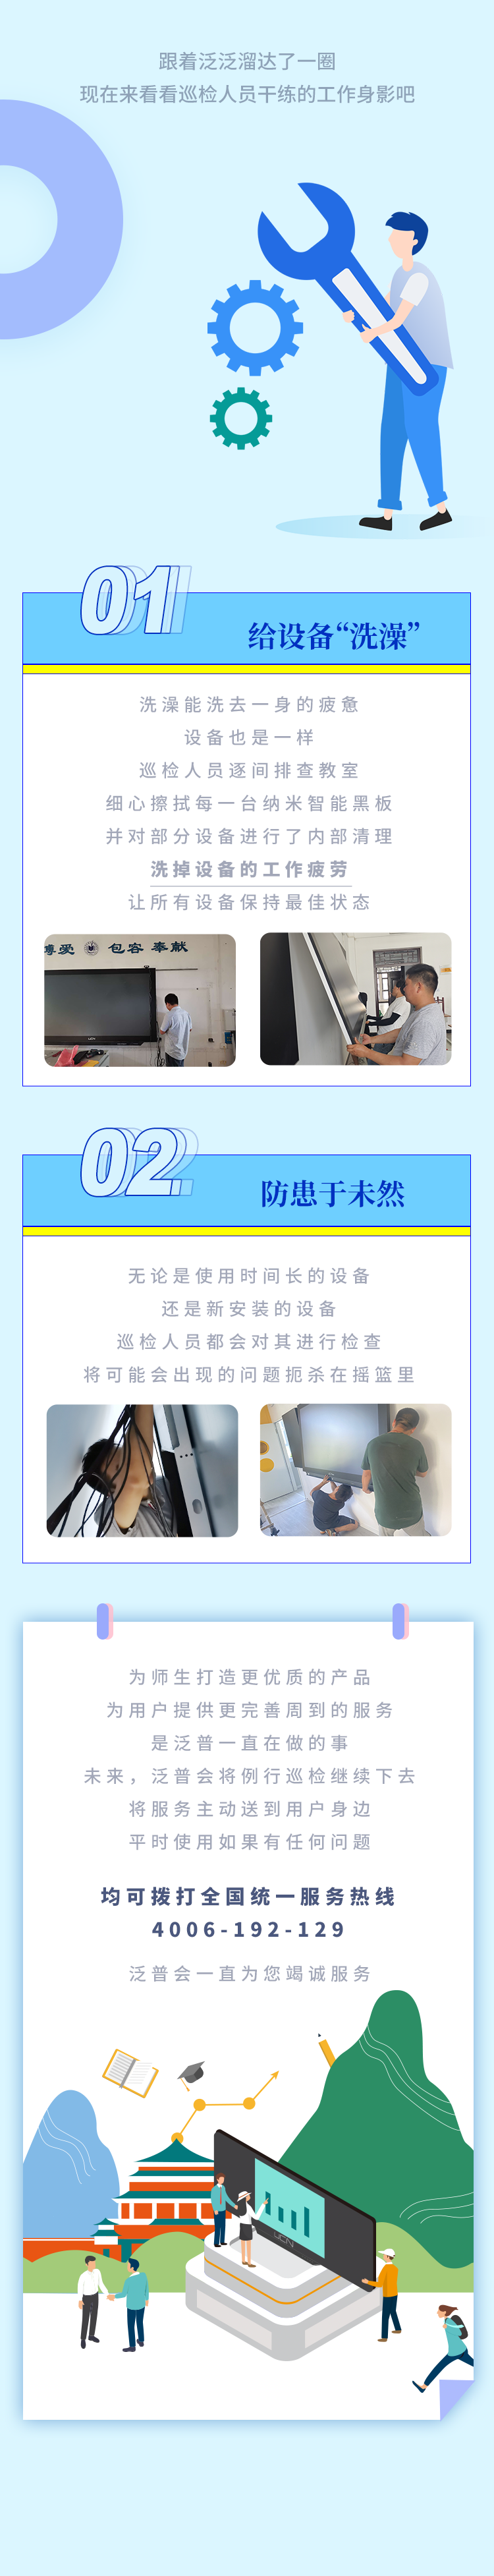 酷游ku游官网最新地址
例行巡检，主动到校服务，保障新学期顺畅教学(图3)